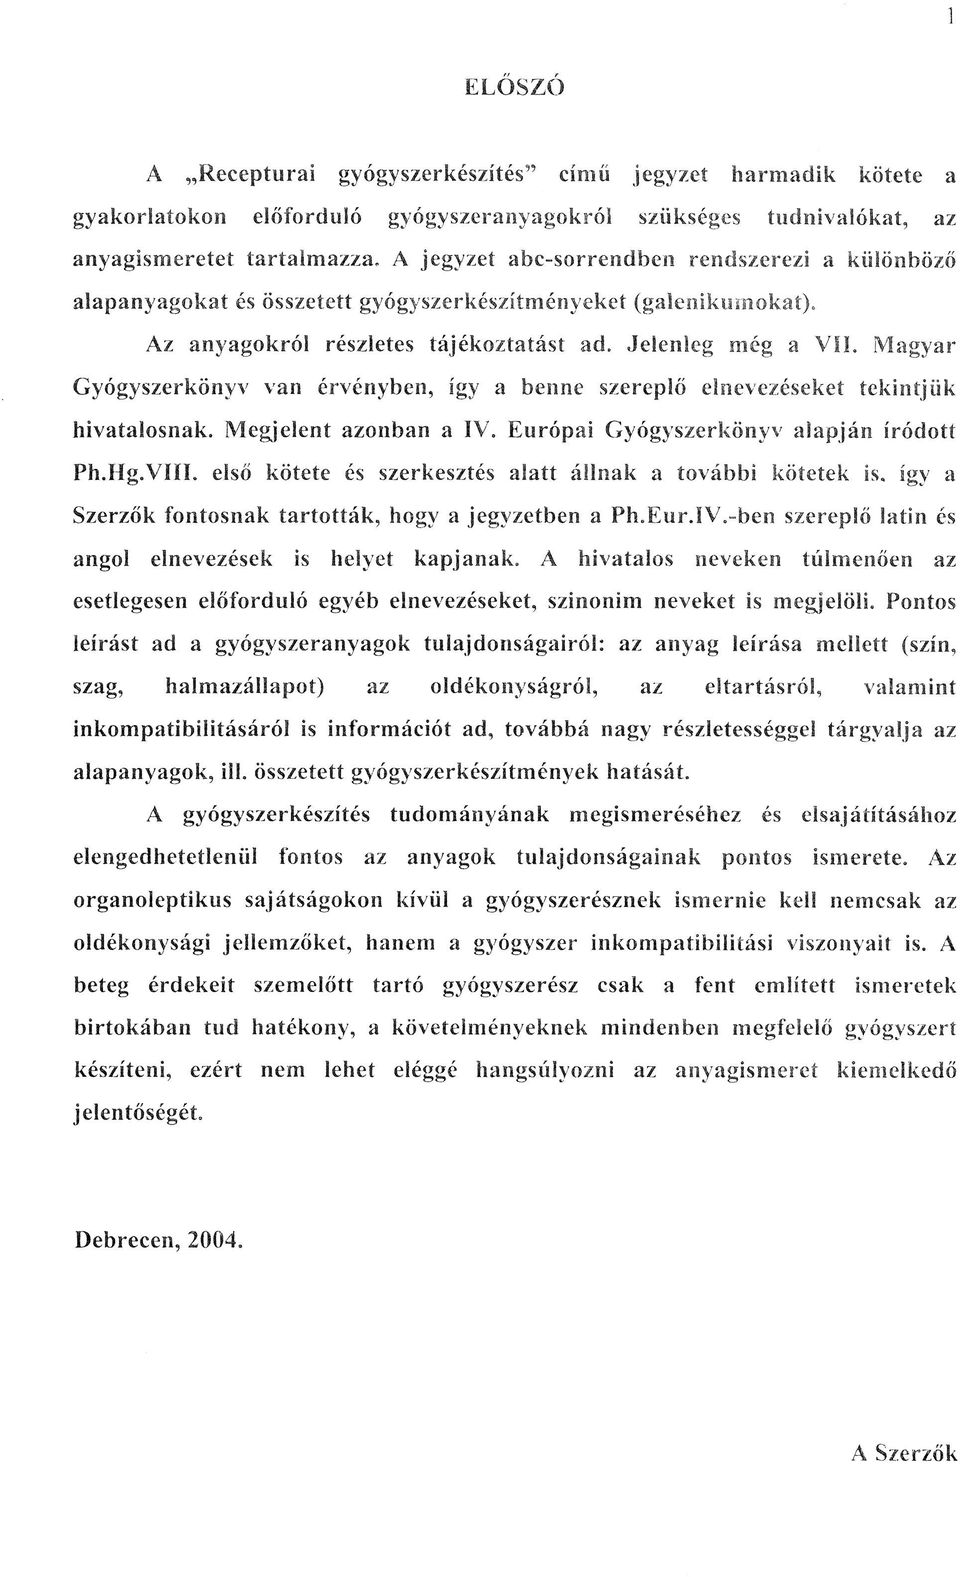 Magyar Gyógyszerkönyv van érvényben, így a benne szereplő elnevezéseket tekintjük hivatalosnak. Megjelent azonban a IV. Európai Gyógyszerkönyv alapján íródott Ph.Hg.VIII.